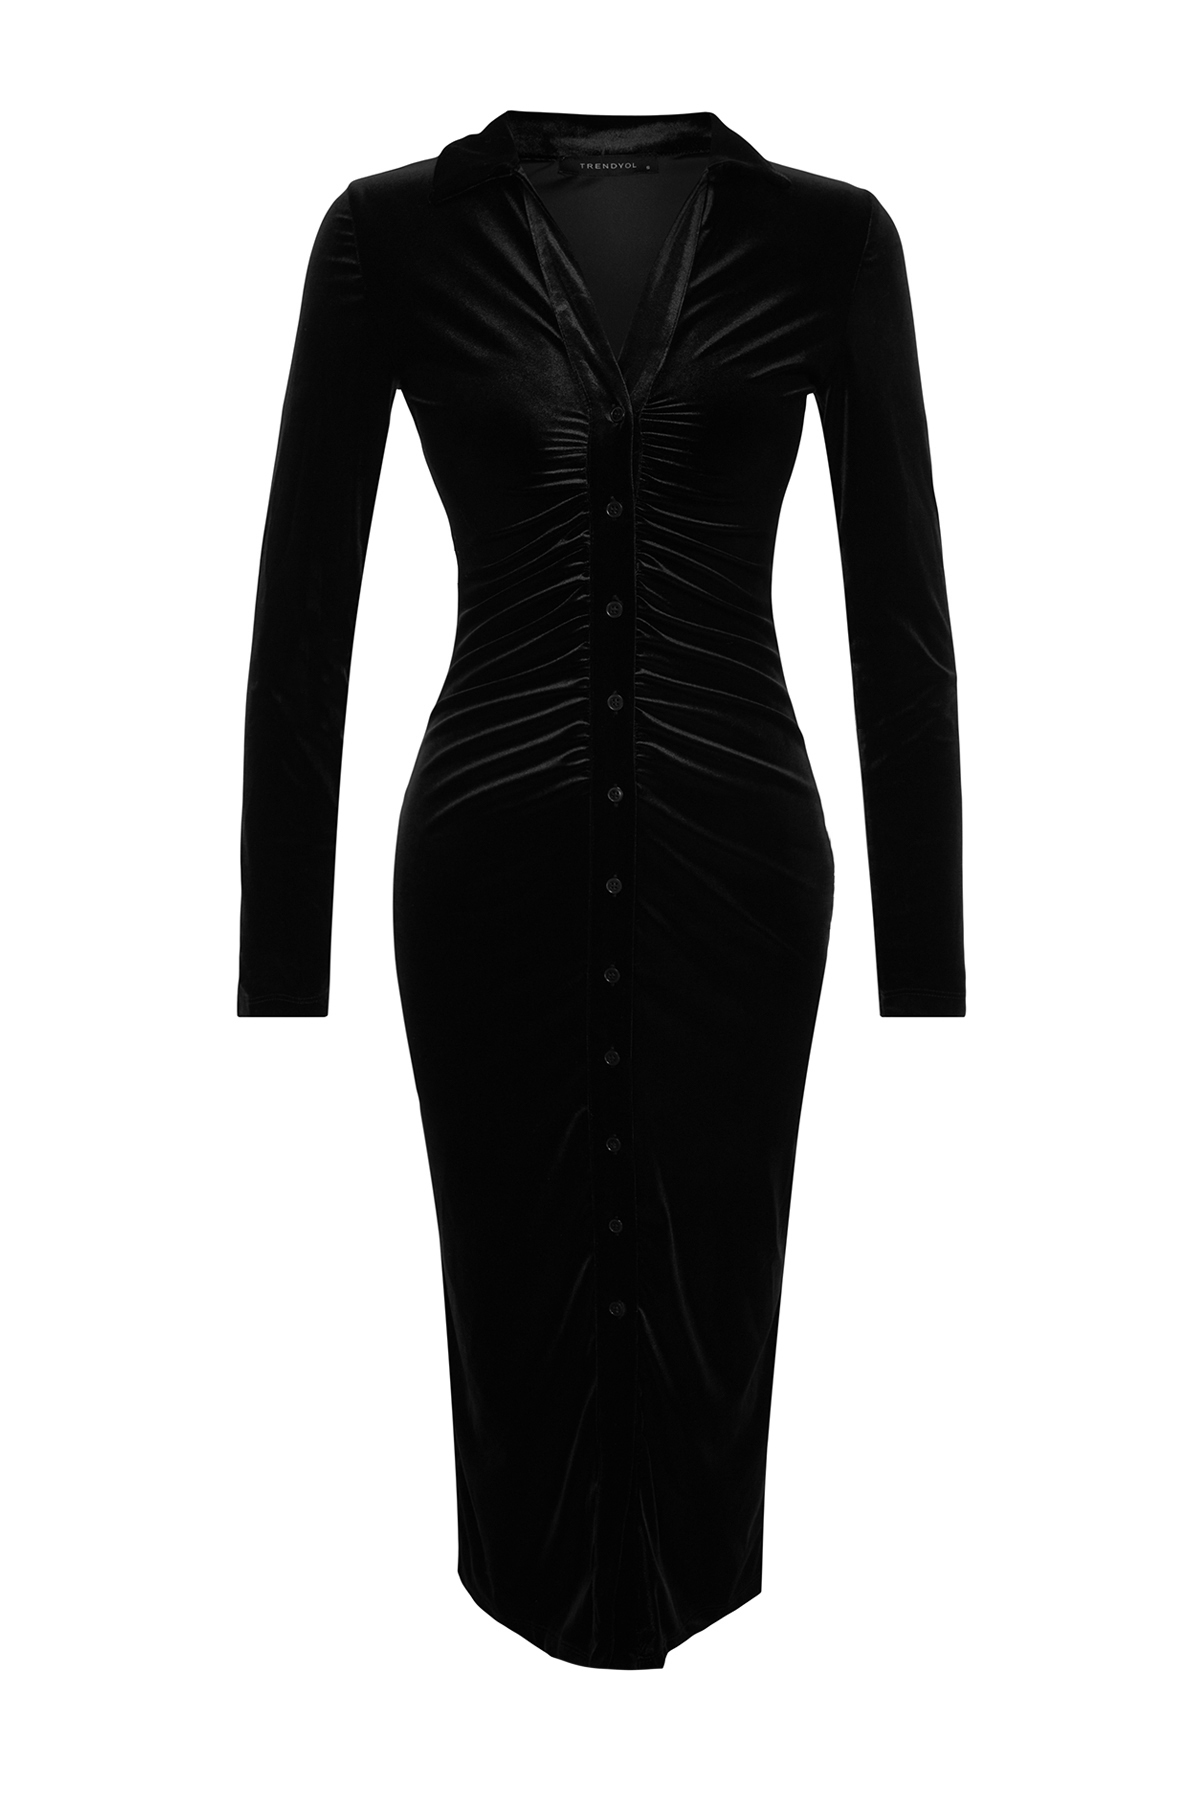 Trendyol Black Velvet Fitted / Simple Polo Neck Midi pletena haljina